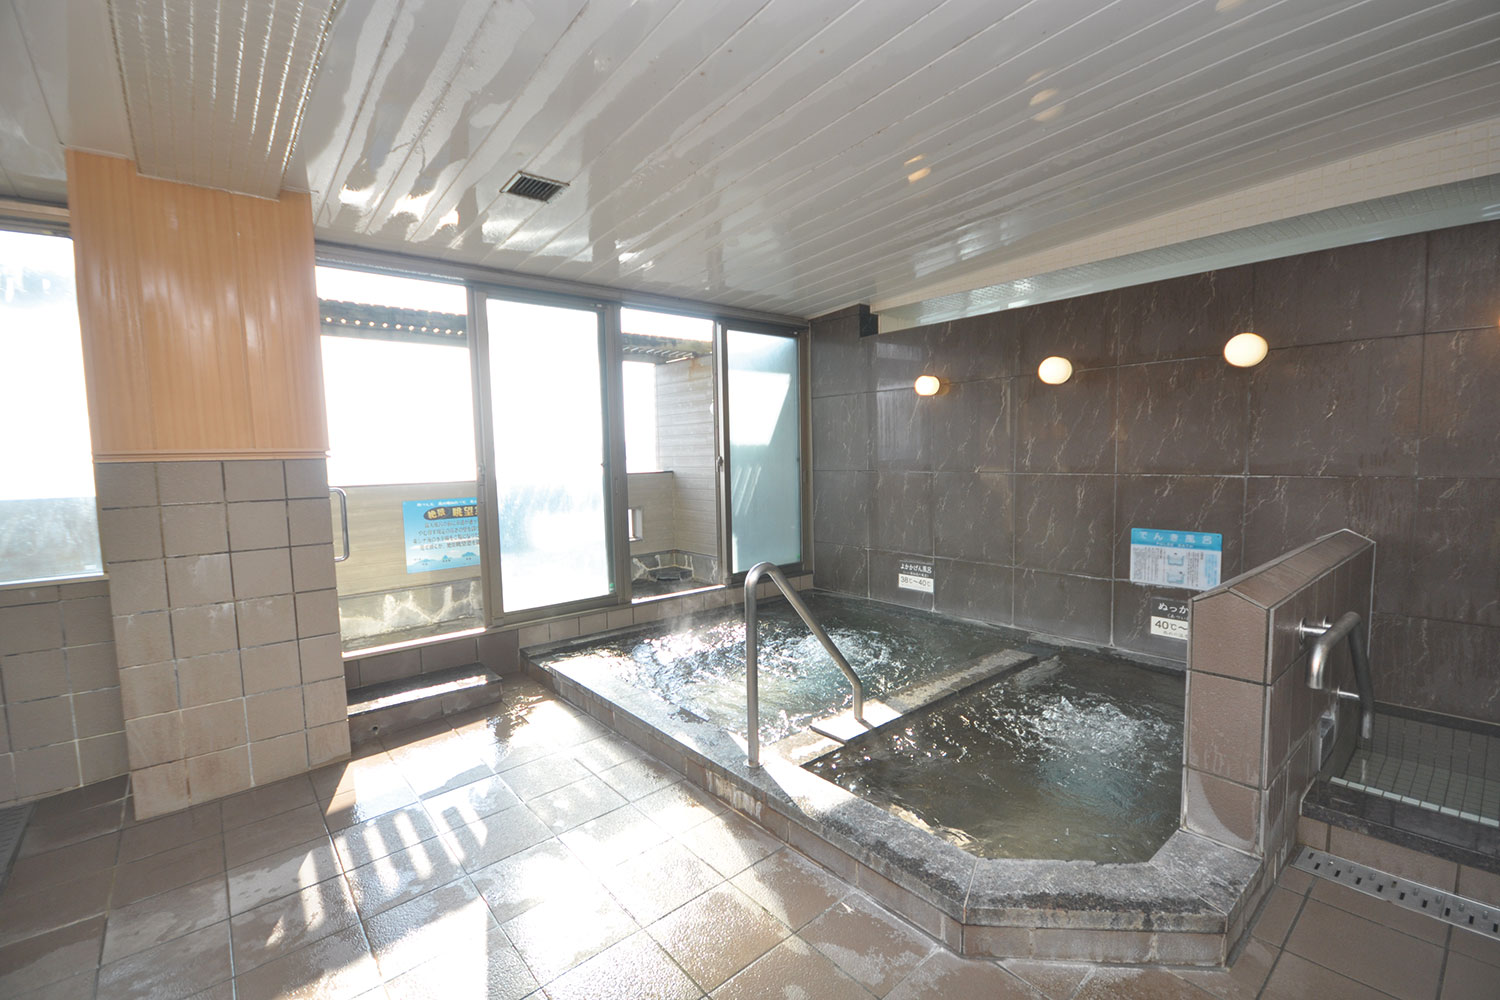 <b>【</b>空と海を臨む宿 <b>Ocean Hotel Iwato】</b>海辺の眺望抜群のホテルで800年の歴史を誇る湯を楽しもう